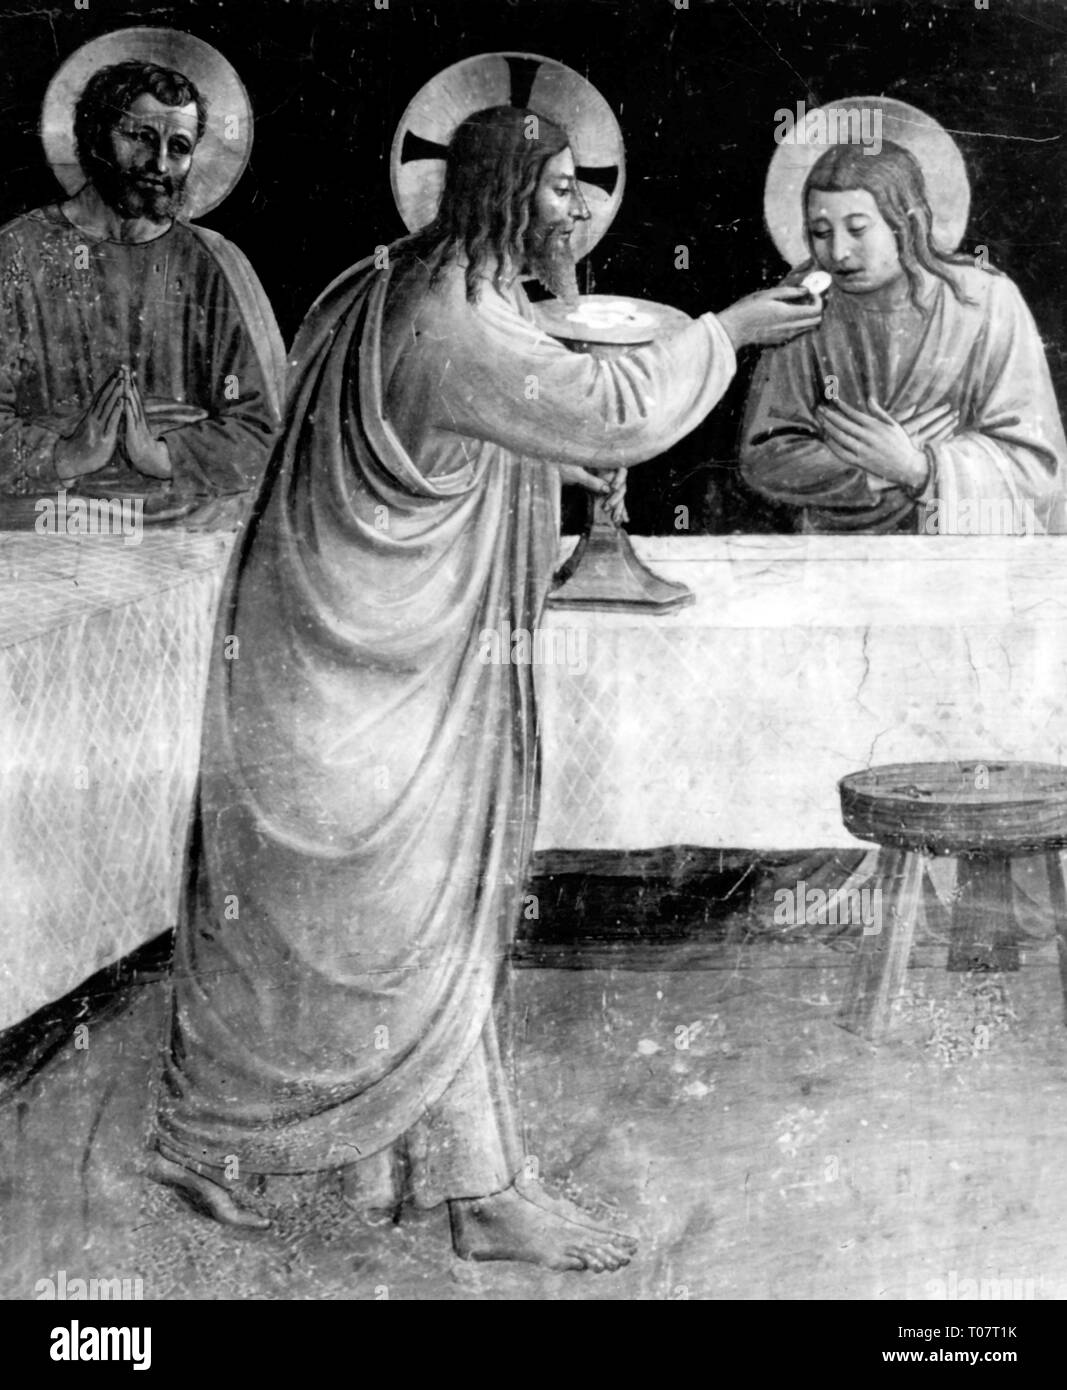 La religion, le christianisme, Jésus Christ, dernière Cène, 'Instituion de l'Eucharistie", peinture de Fra Angelico (1386 / 1400 - 1455), vers 1437 - 1446, l'artiste n'a pas d'auteur pour être effacé Banque D'Images